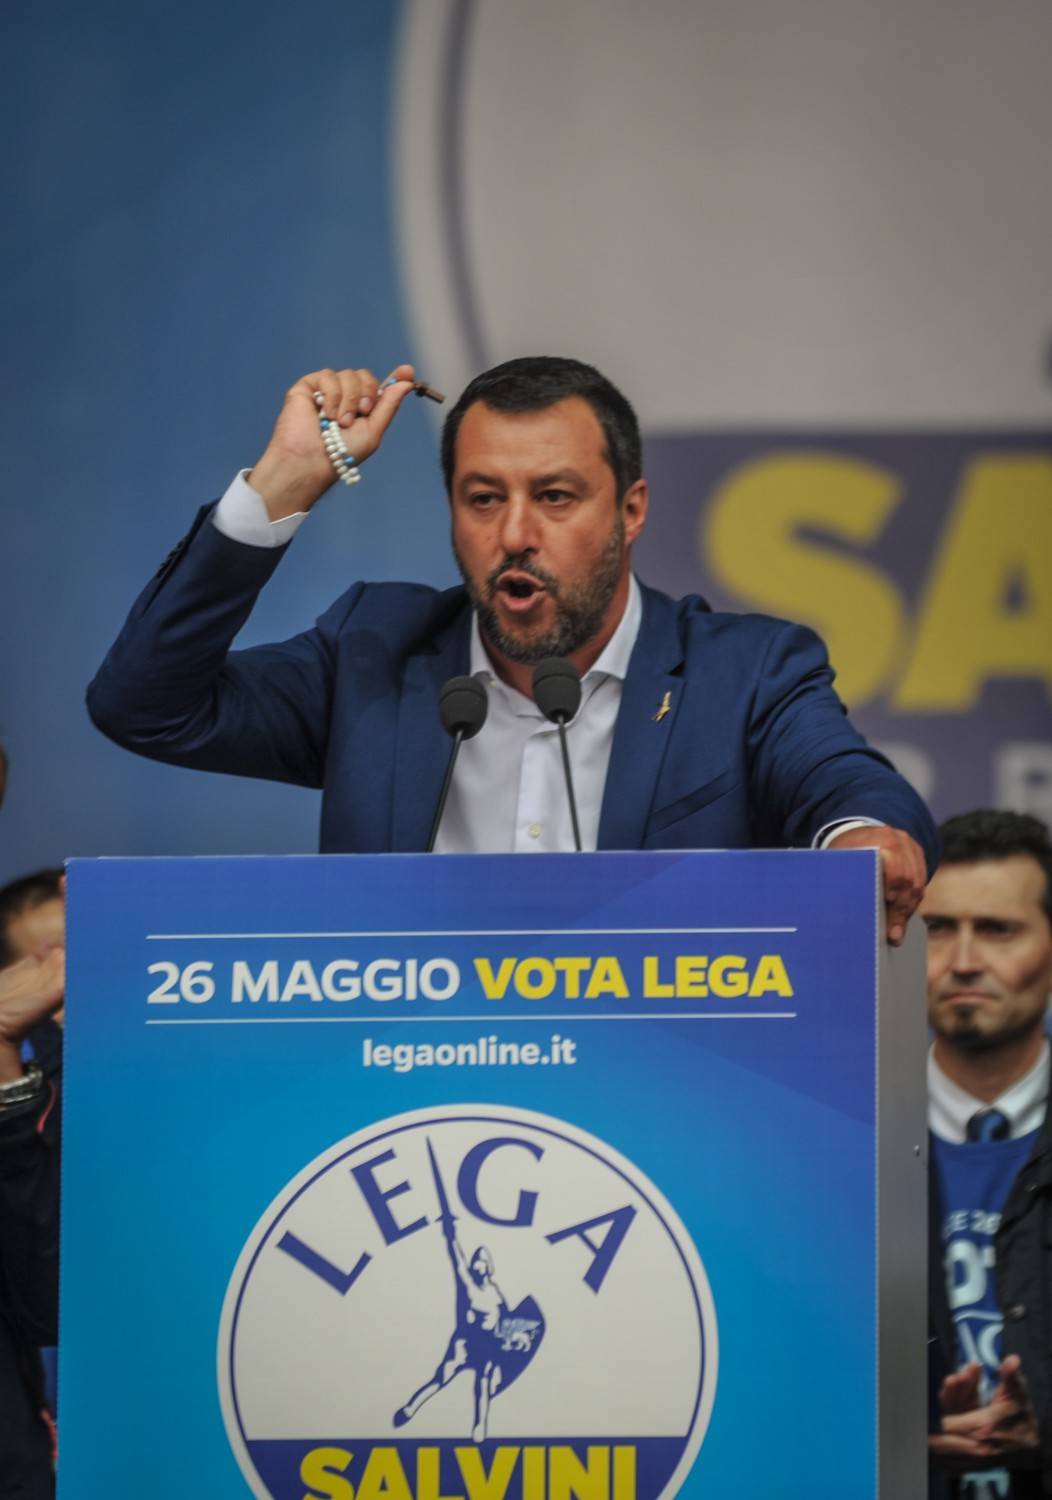 La Chiesa contro Salvini: "Dio è di tutti, invocarlo per sé è pericoloso"